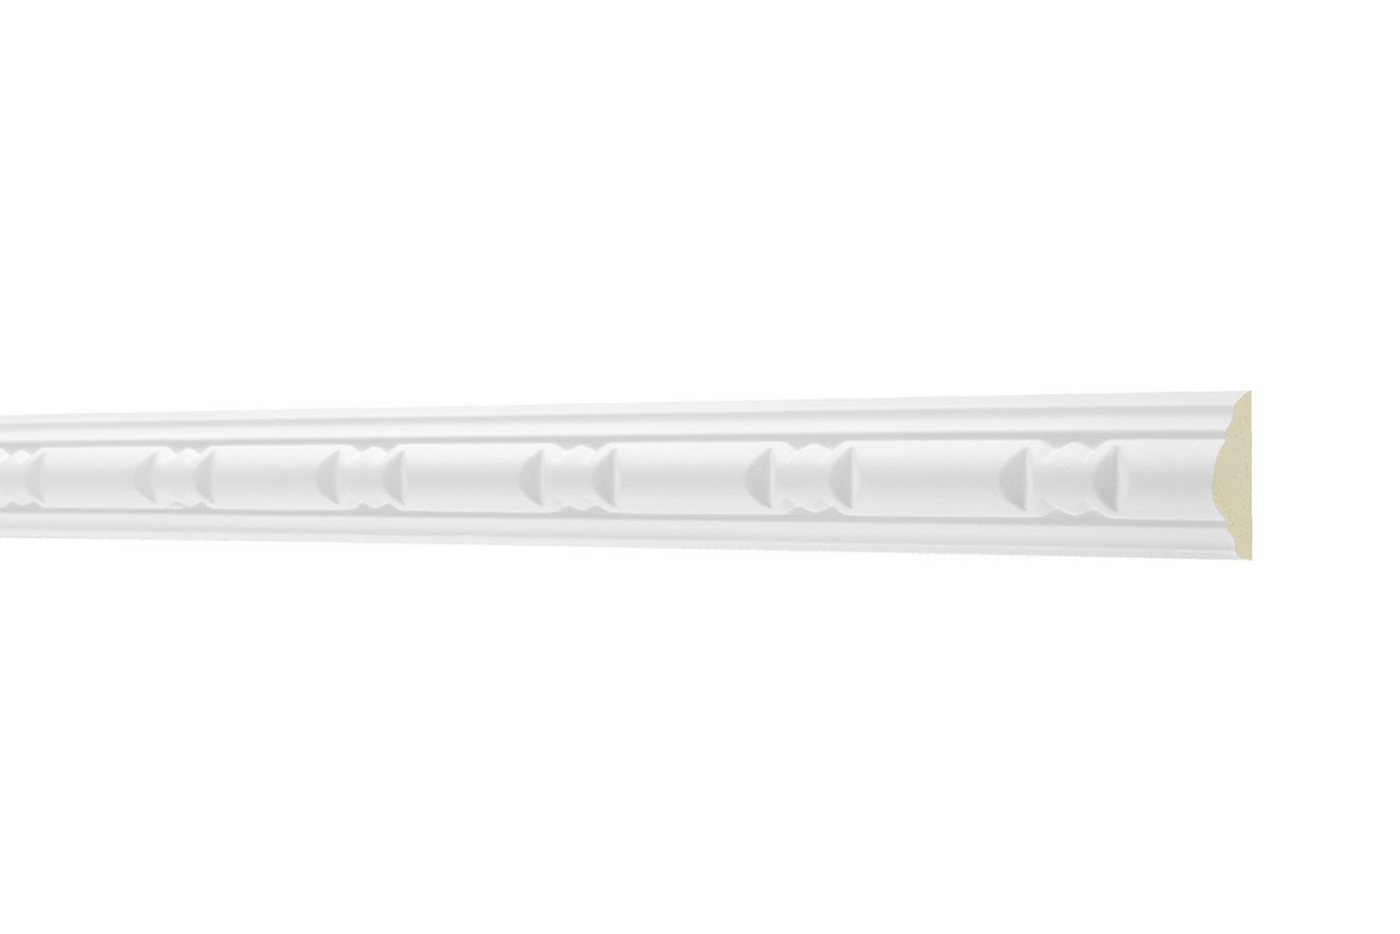 Hexim Perfect Stuckleiste AC 257, Flachprofile aus PU Serie 1 - Stuckprofil gemustert, weißes Zierprofil, hart & stoßfest - Wandleiste vorgrundiert von Hexim Perfect